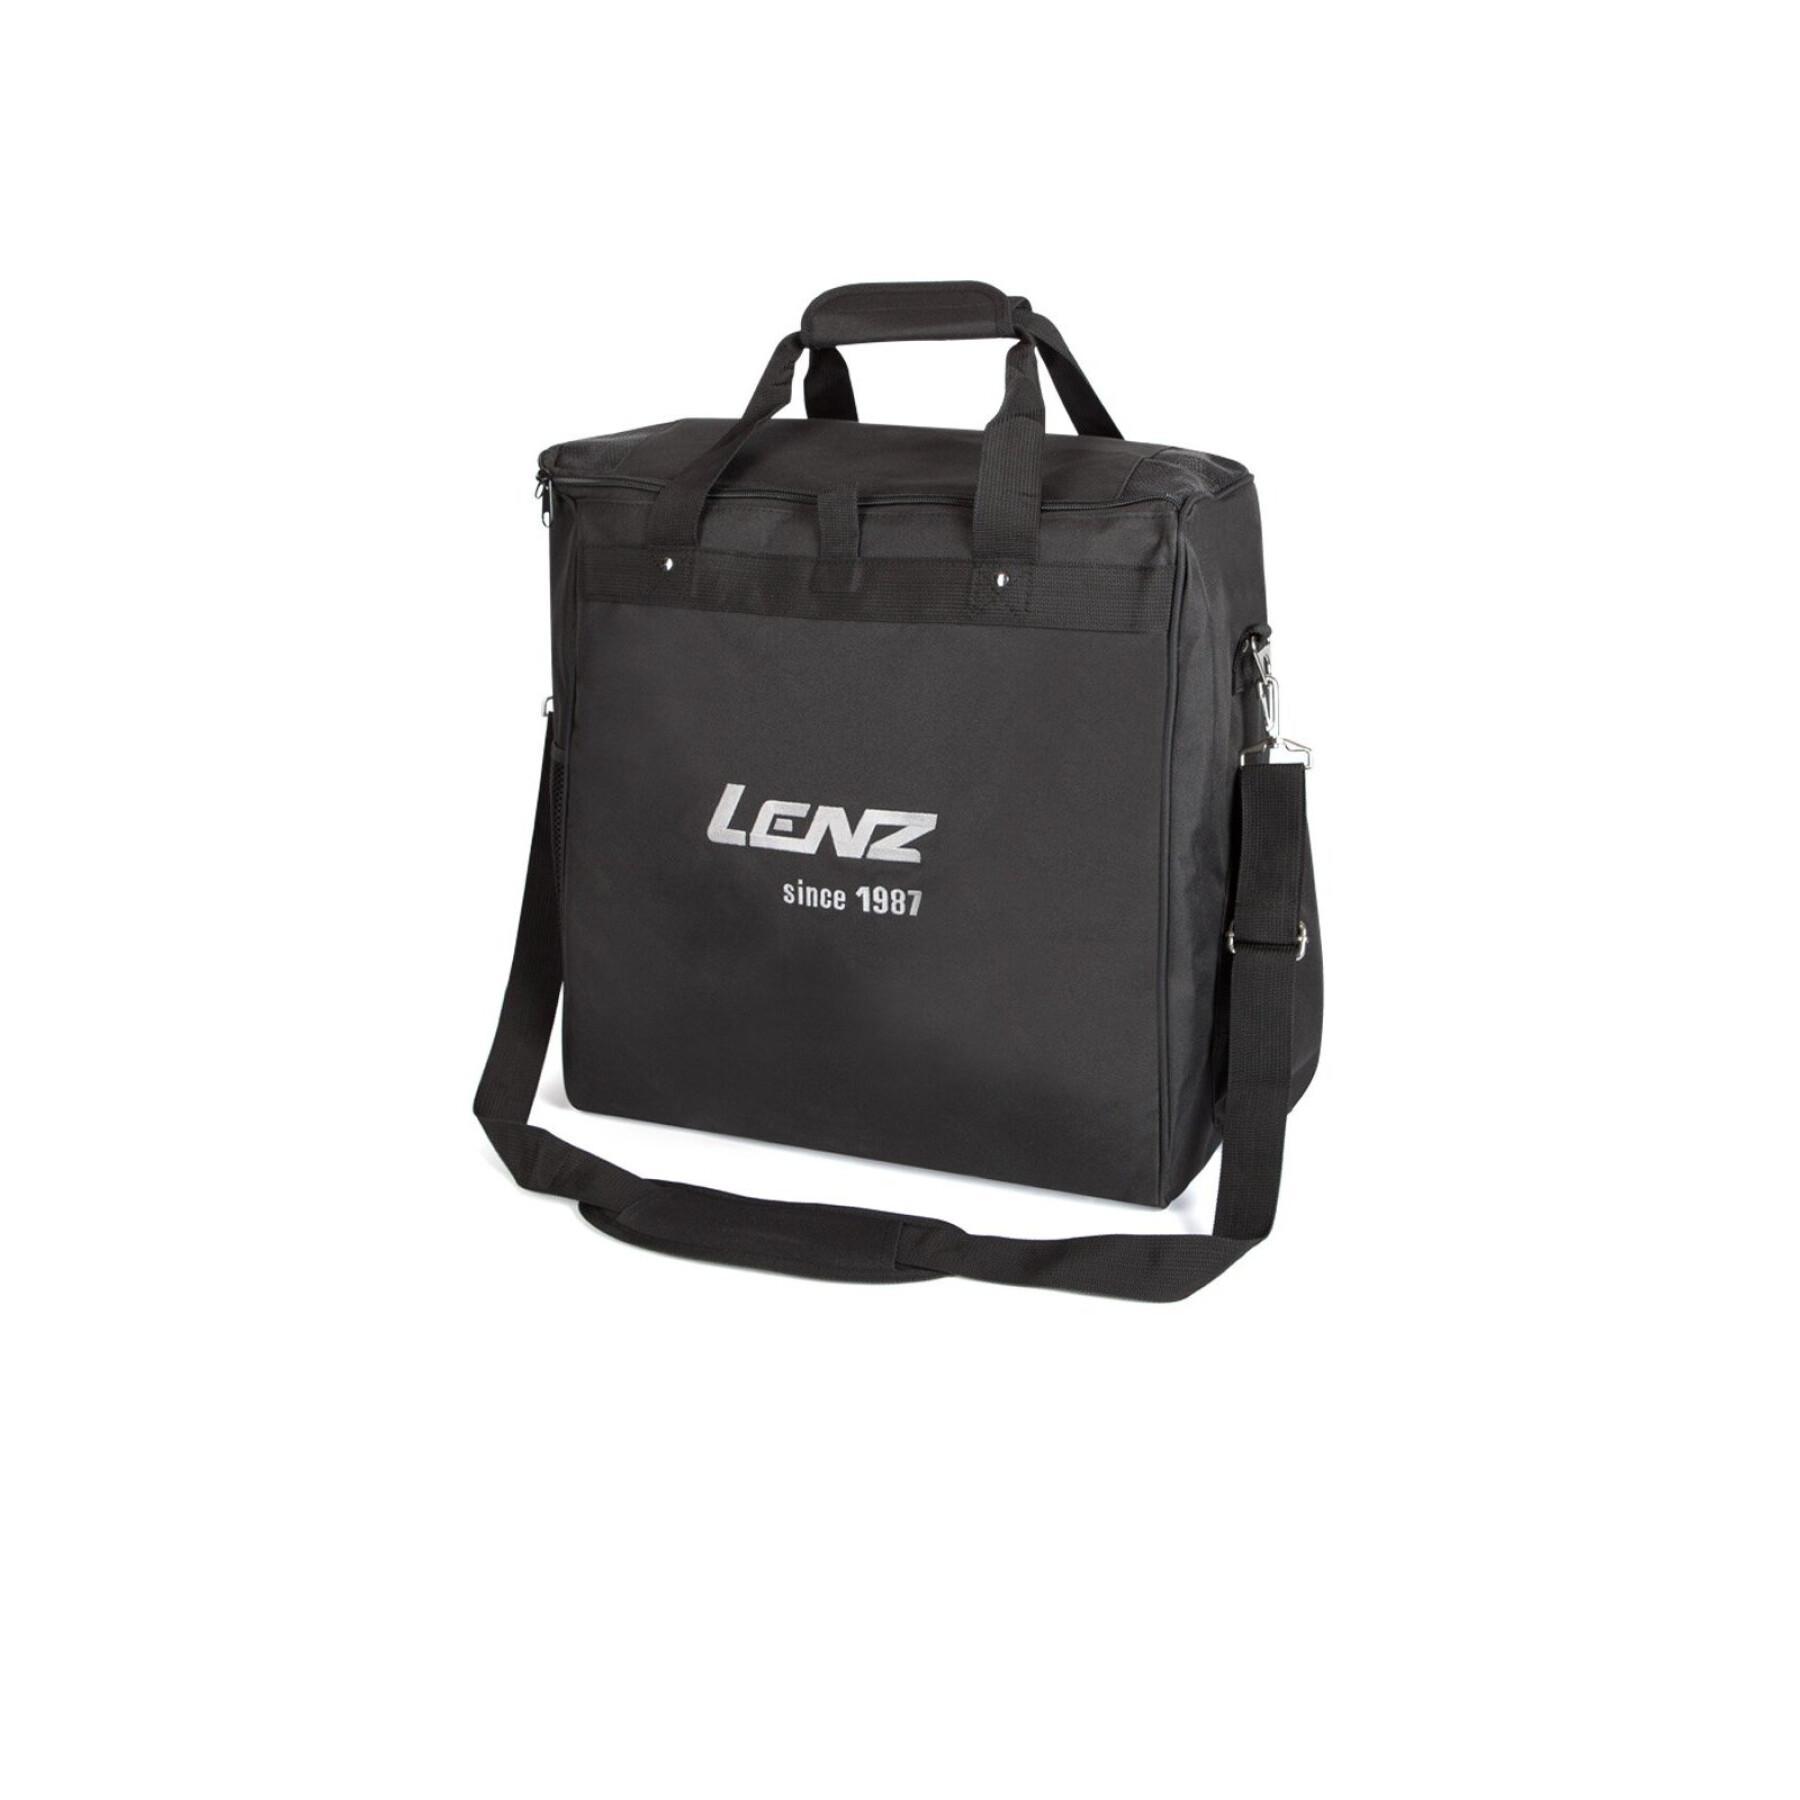 Heated sports bag Lenz 1.0